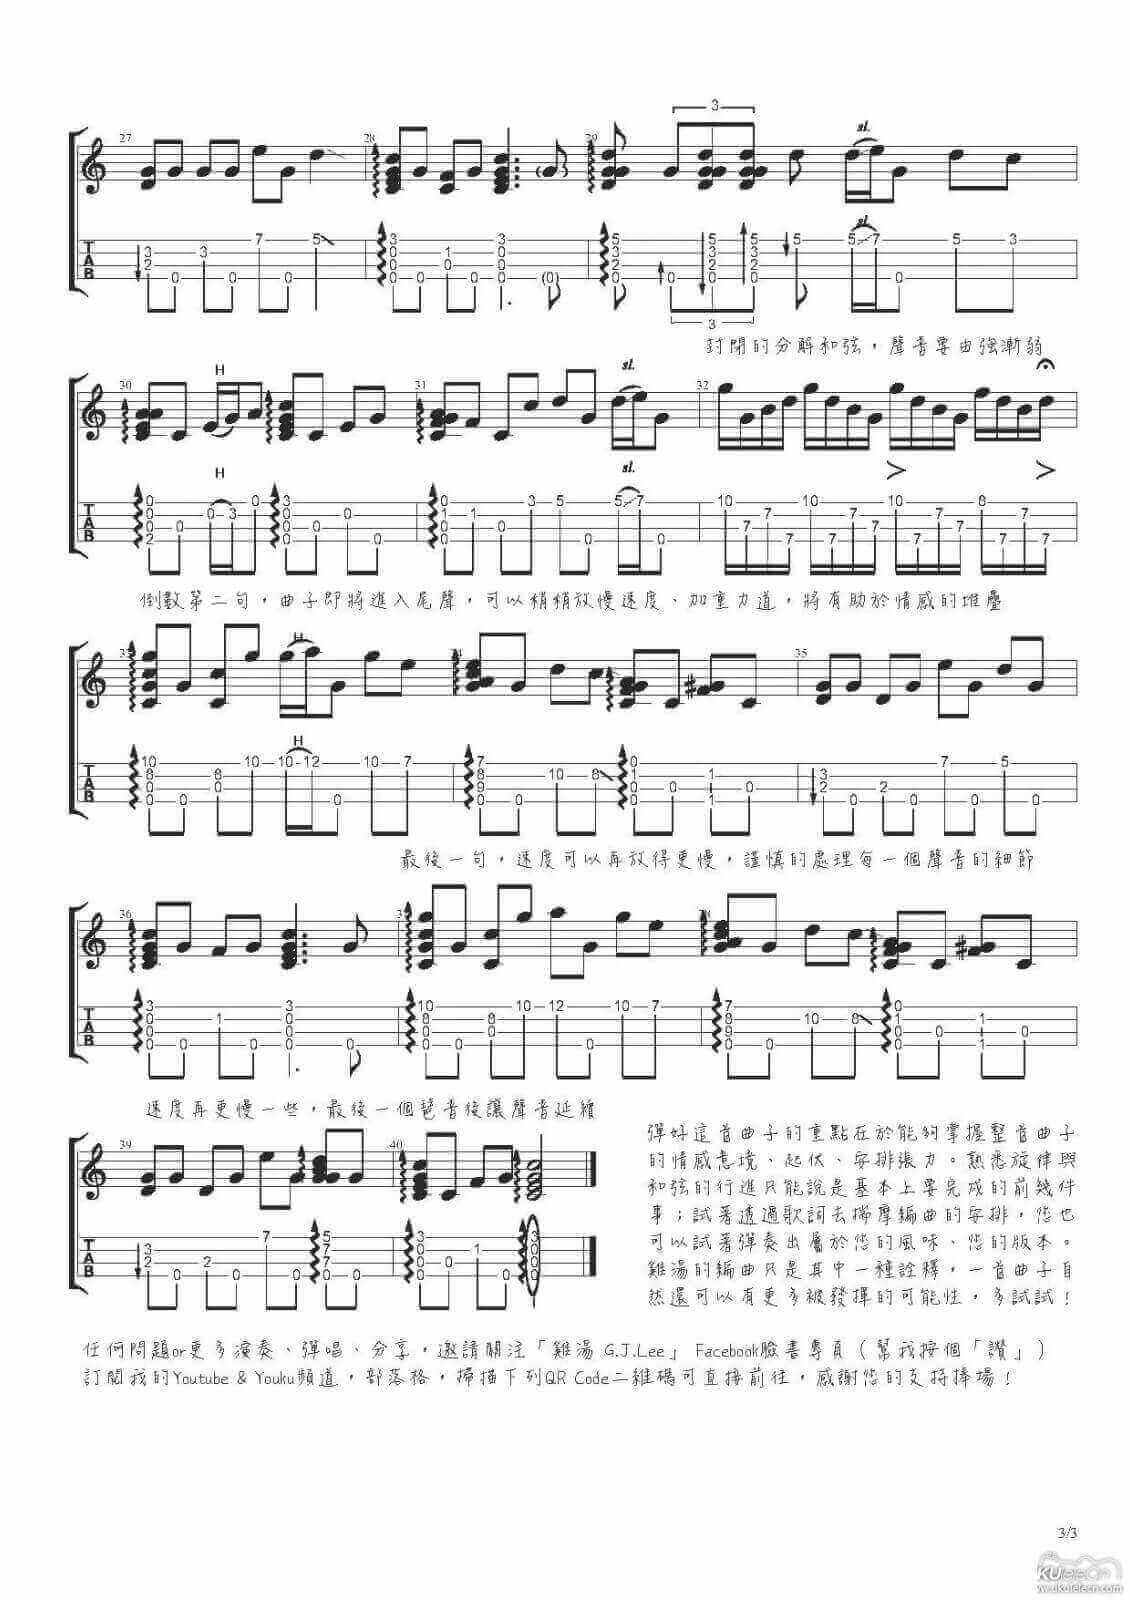 G.J Lee鸡汤老师改编的一首台湾地区的经典民谣《望春风》  ukulele指弹曲谱插图2